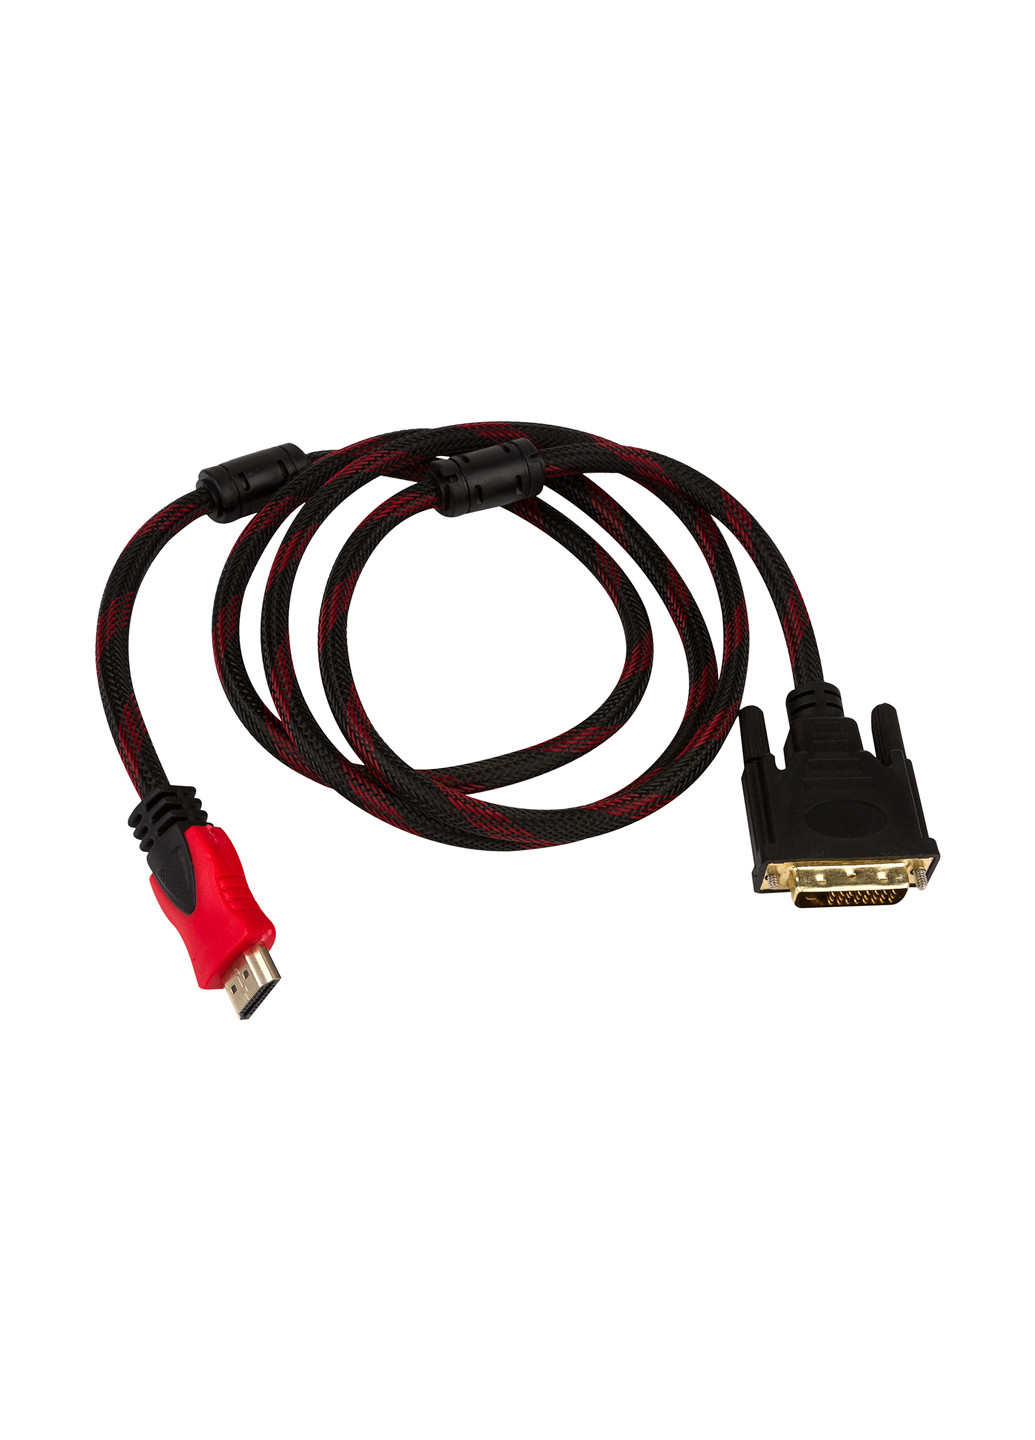 Кабель HDMI - DVI copper, 3 м (50030) CHARMOUNT кабель charmount hdmi - dvi copper, 3 м (50030) (145607403)